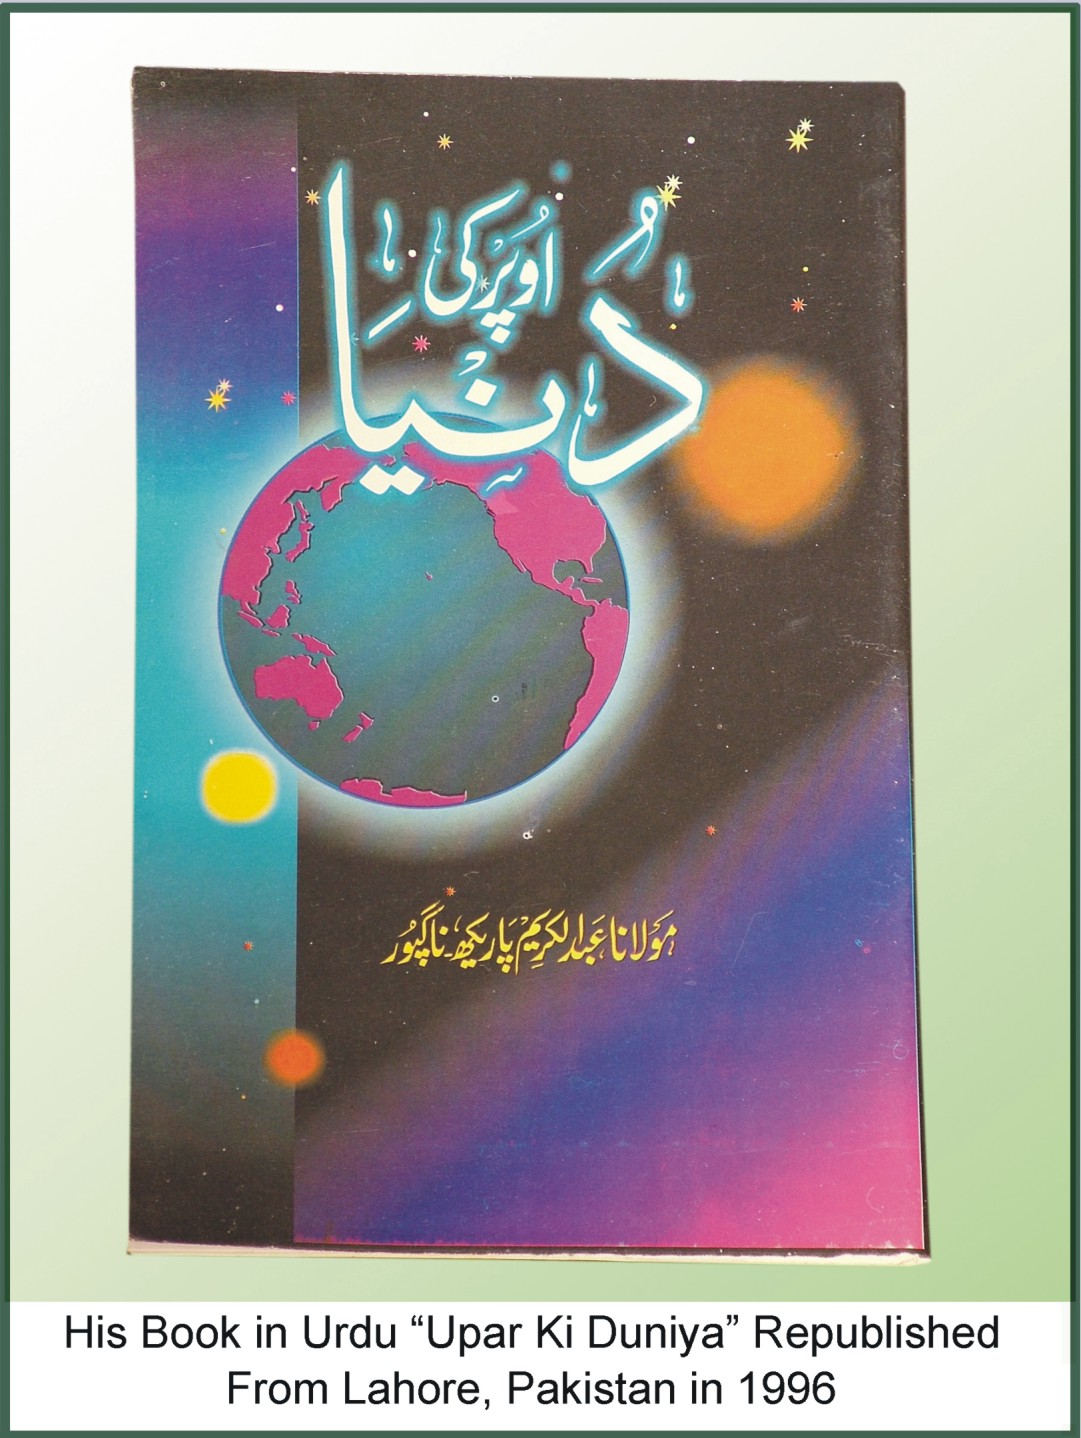 Upar ki Duniya (Urdu) Republished from Lahore, Pakistan in 1996